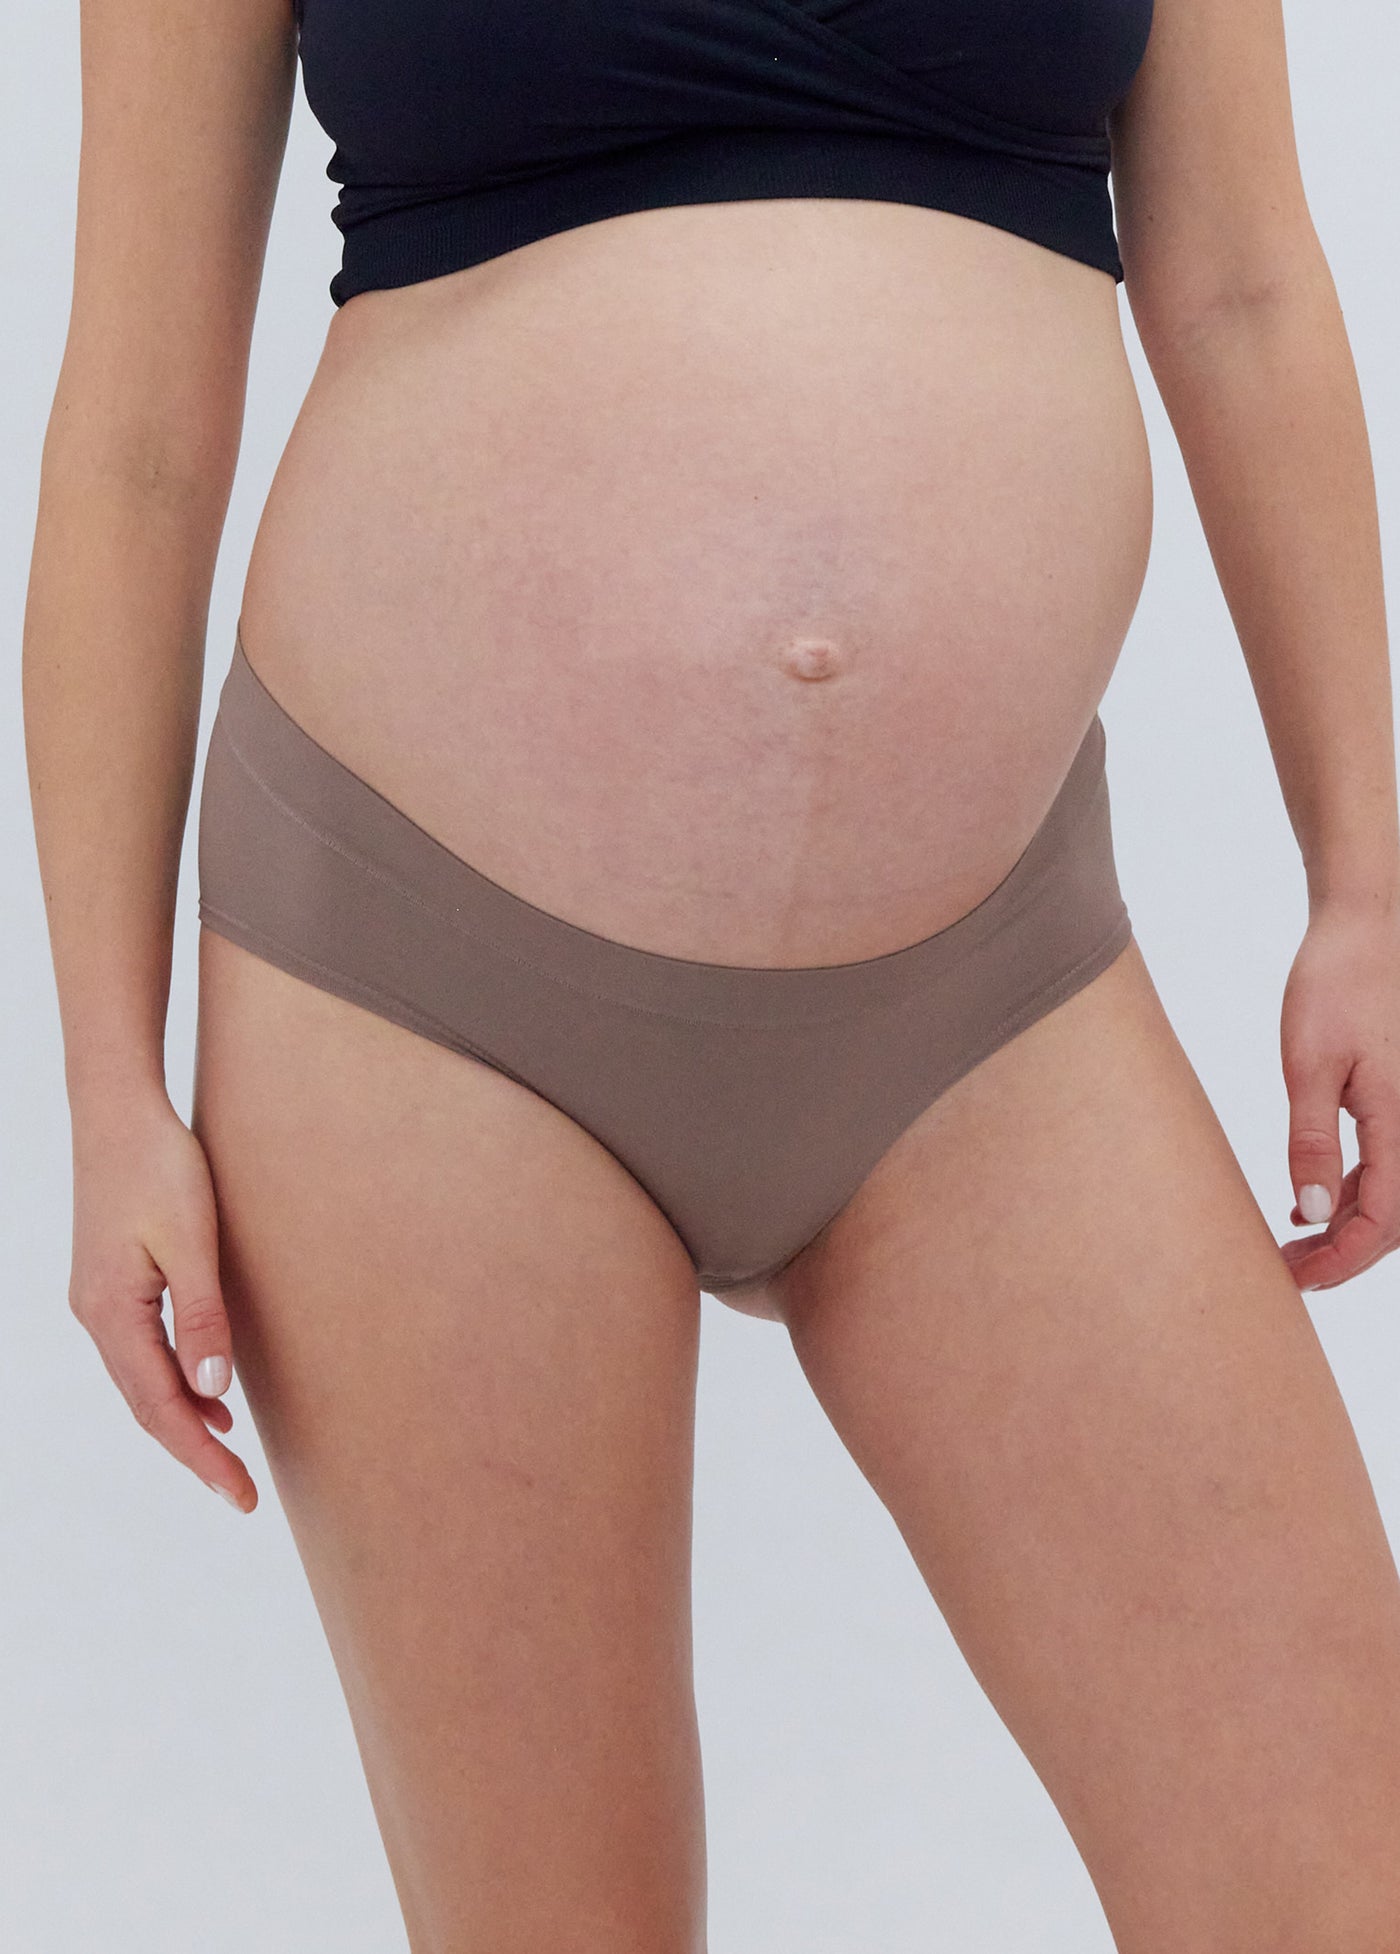 ZMHEGW Womens Underwear Seamless Pregnant Pure Cotton After